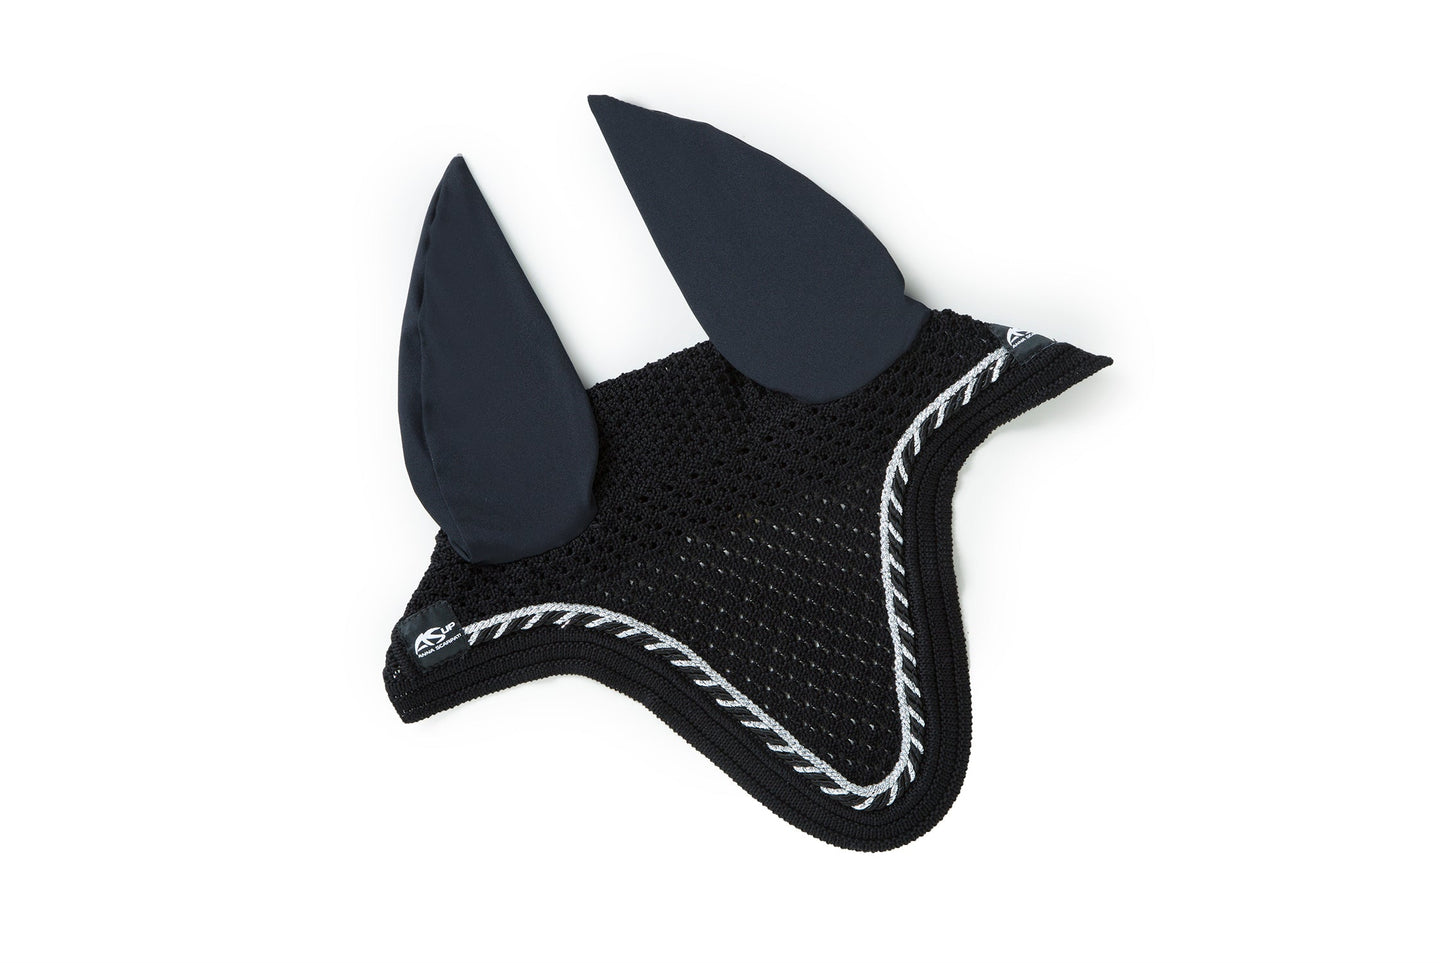 Anna Scarpati black horse ear bonnet with white trim details.